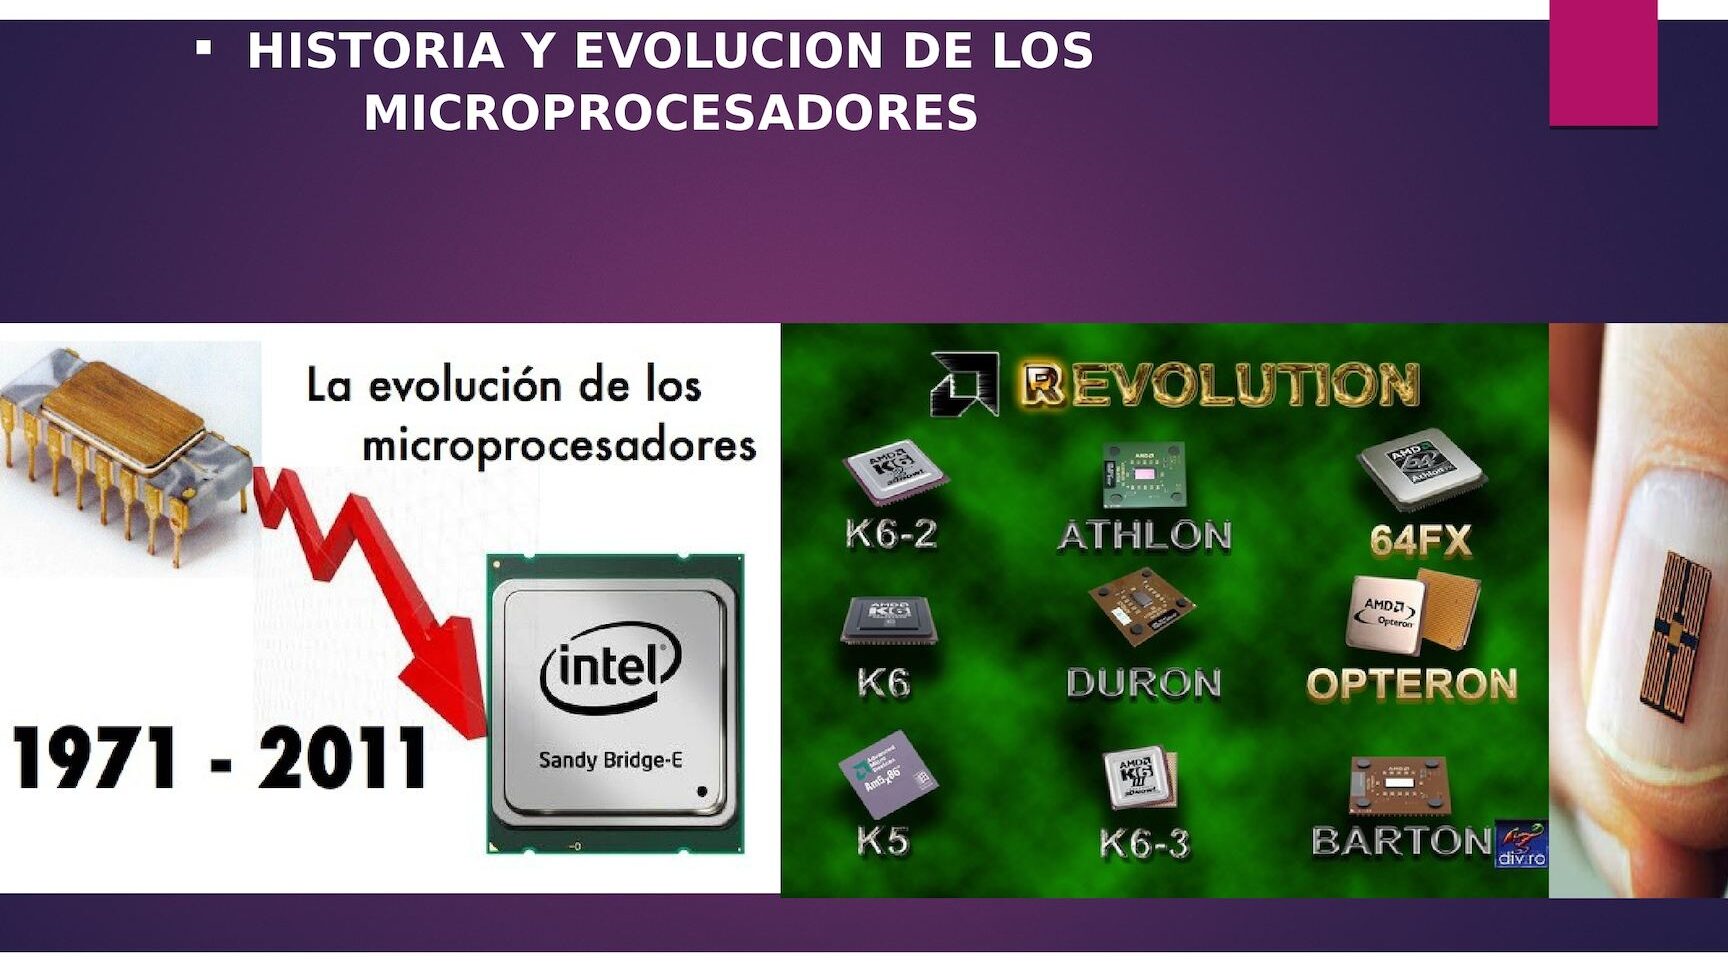 La evolución de los microprocesadores a lo largo del tiempo